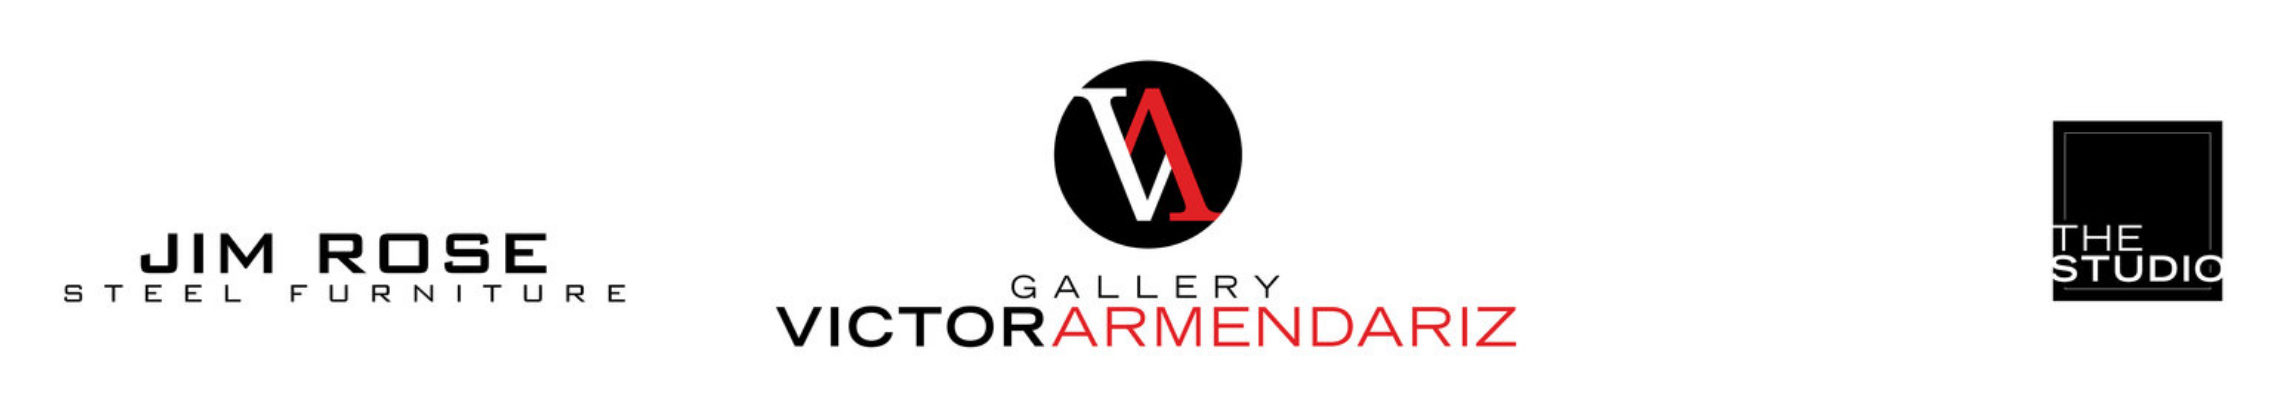 Victor Armendariz Gallery front banner of website screenshot.